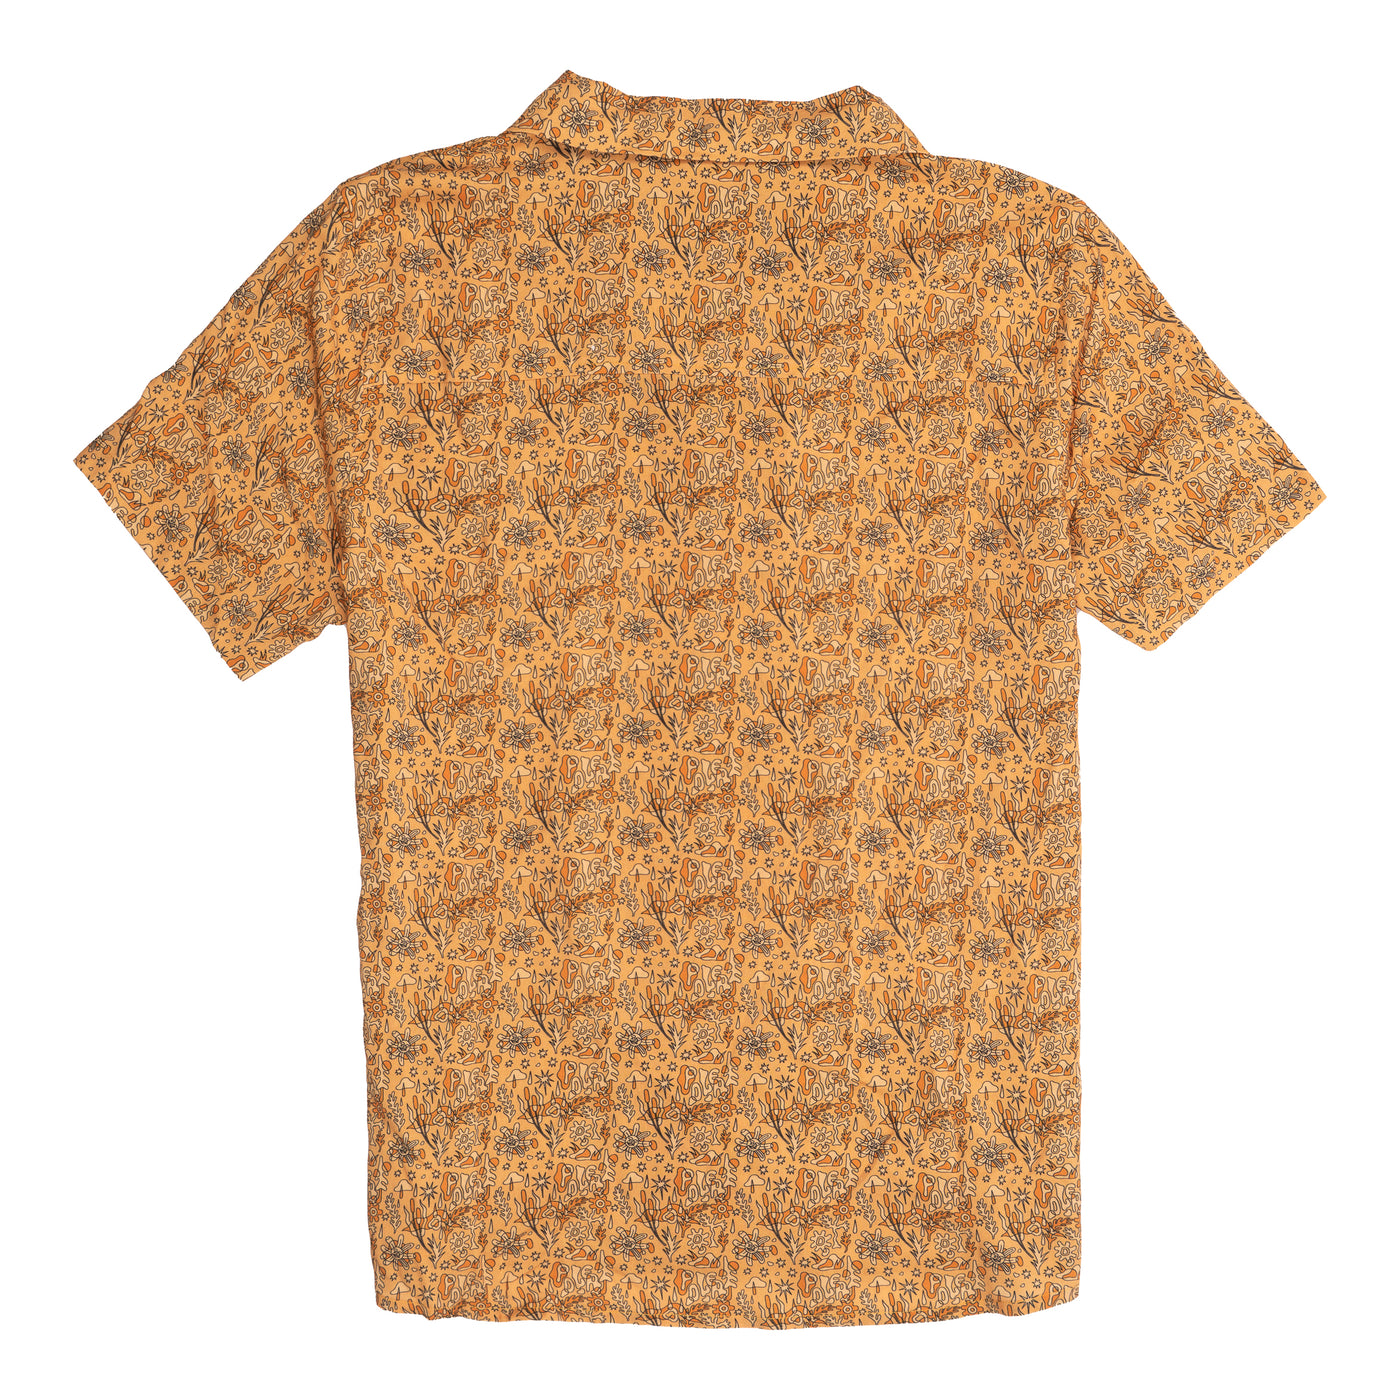 Aloha Shirt product   